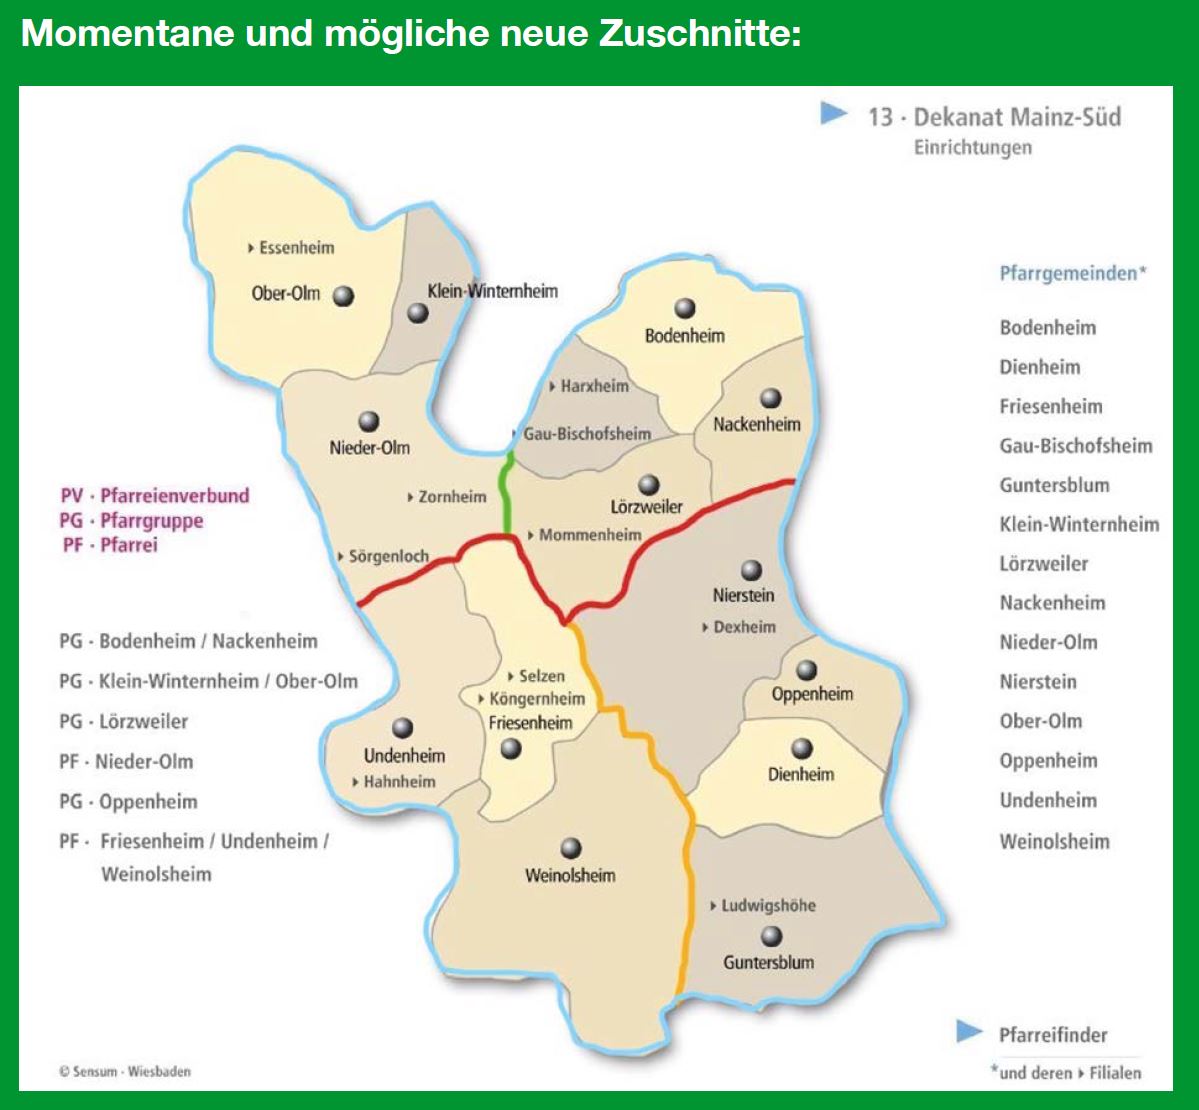 Dekanat Mainz Süd - Momentane und mögliche neue Zuschnitte (c) Dekanat Mainz Süd